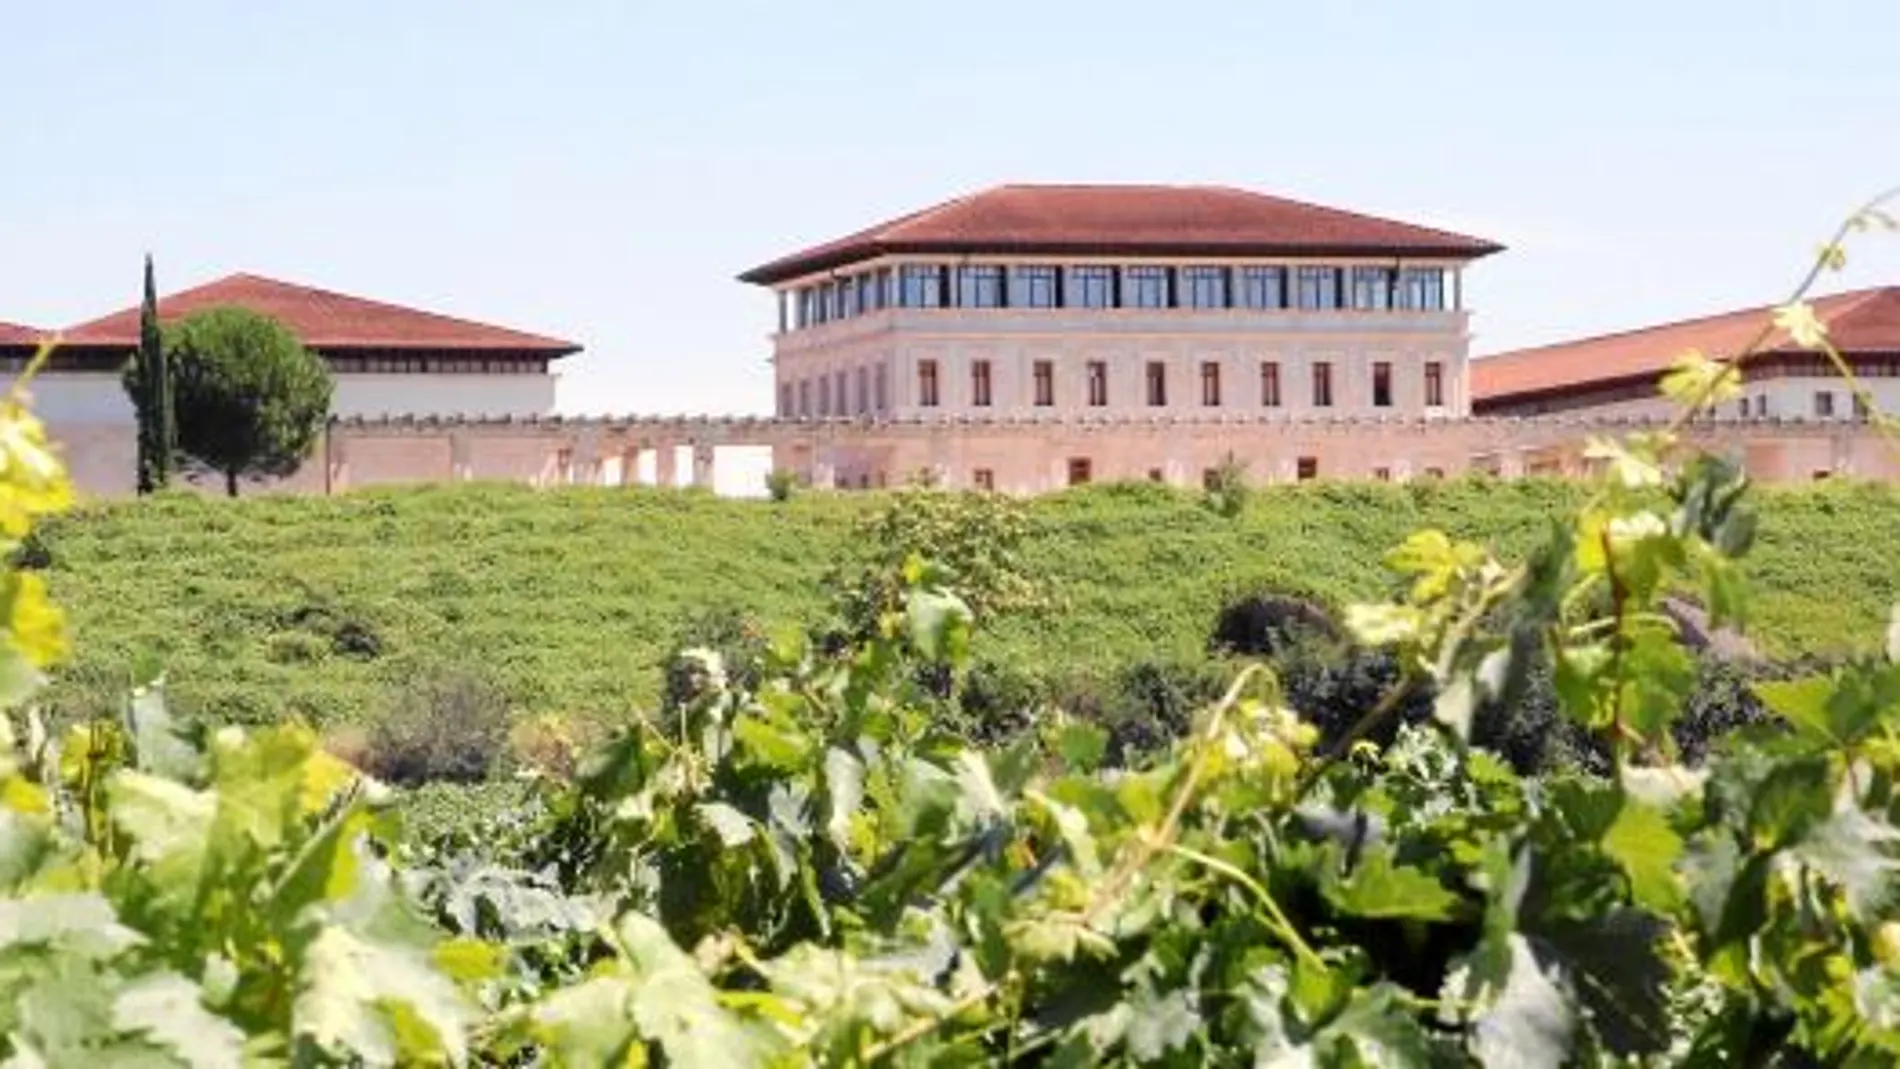 Rioja Vega mantiene intacta la filosofía de su fundador: crear vinos de máxima calidad respetando el terruño y la tradición riojana sin perder el respeto por el entorno